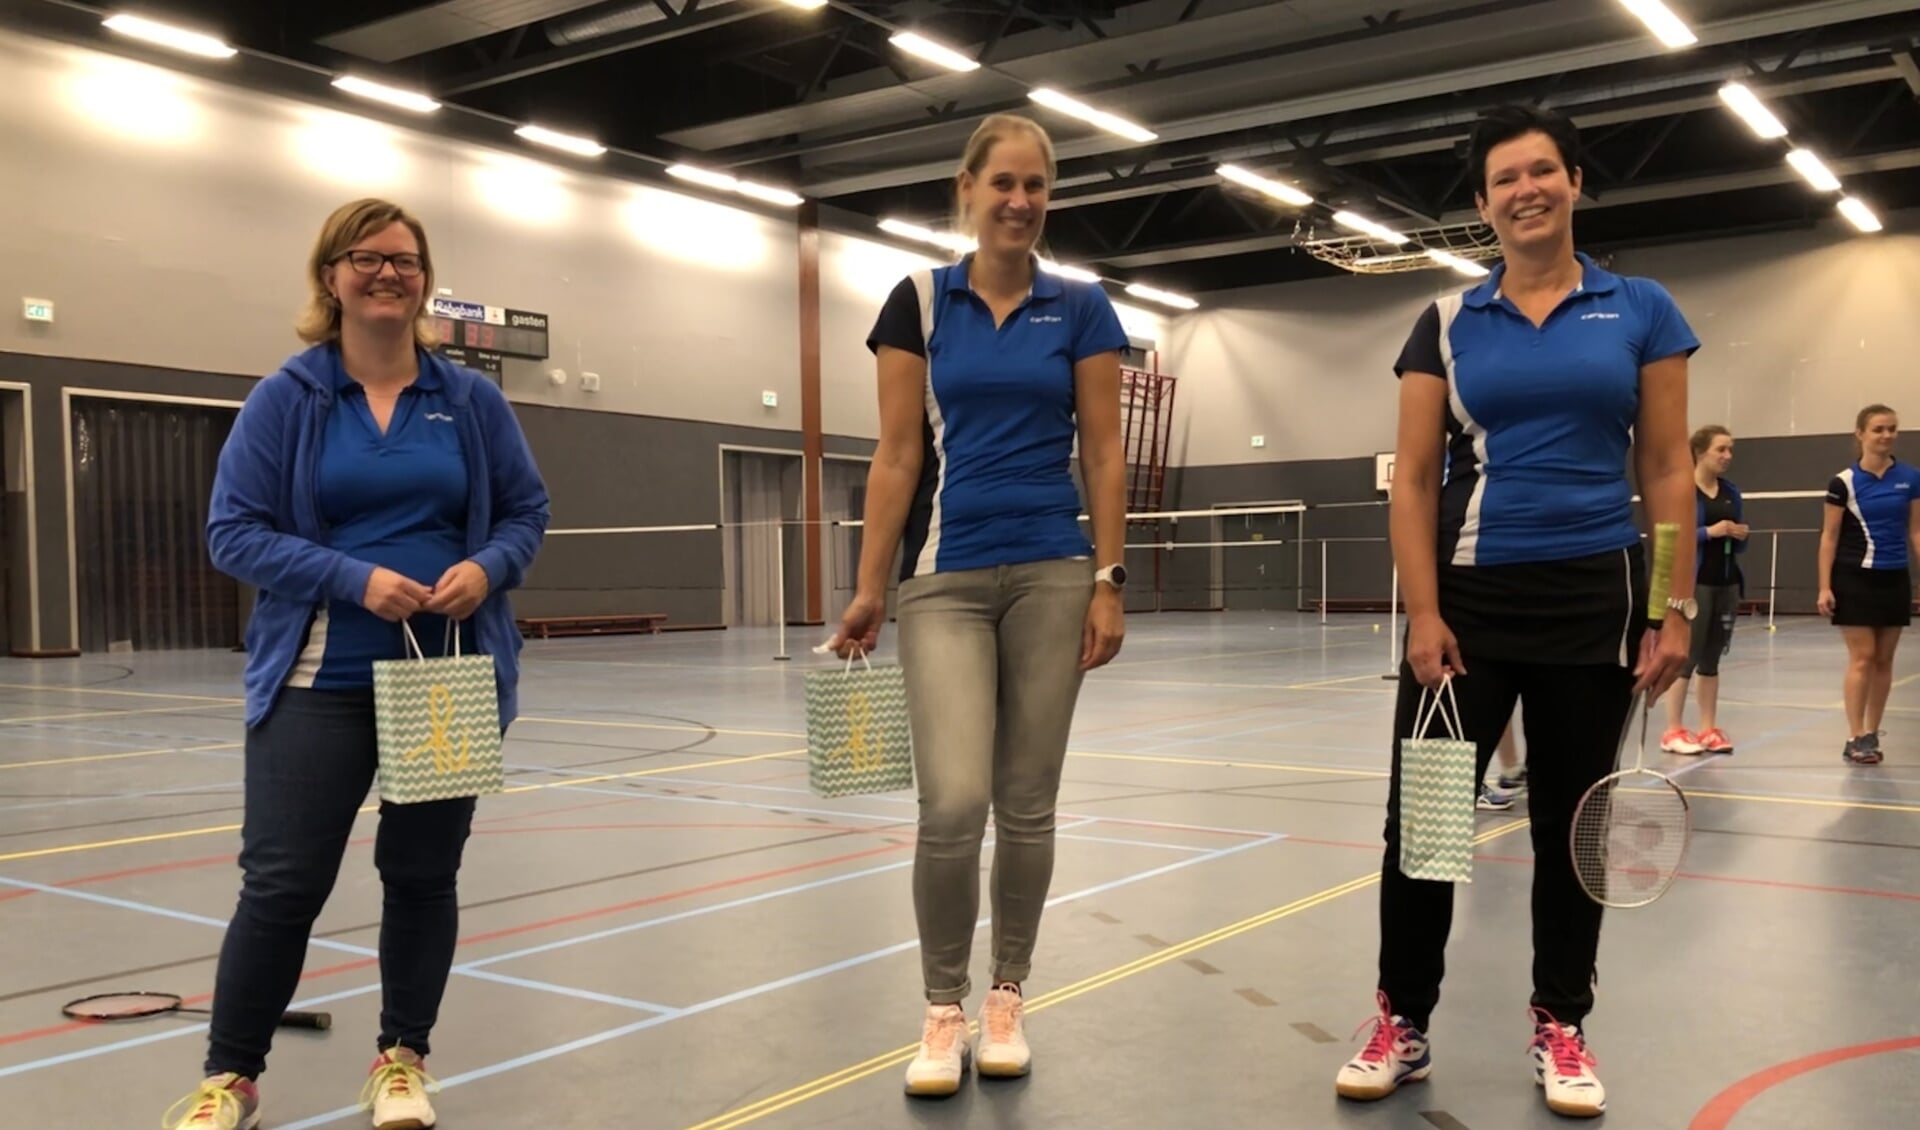 Vlnr. Wendy Verbrugge, Marieke van Turnhout en Monika Slaets